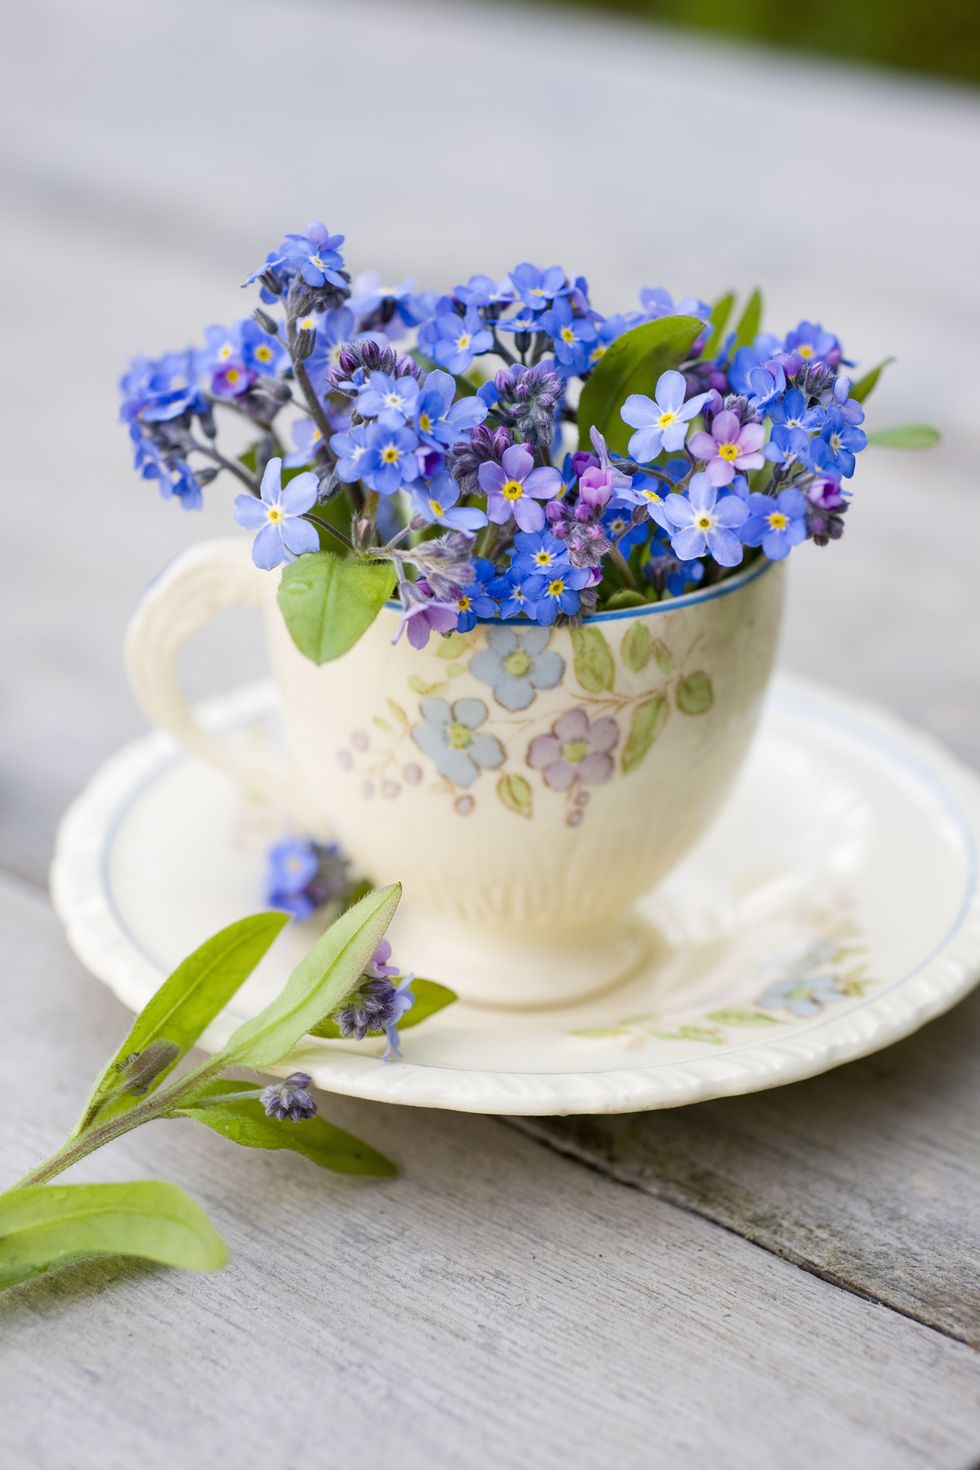 Flower, Blue, Forget-me-not, Plant, Violet, Purple, Flowering plant, Lavender, Bouquet, Cut flowers, 